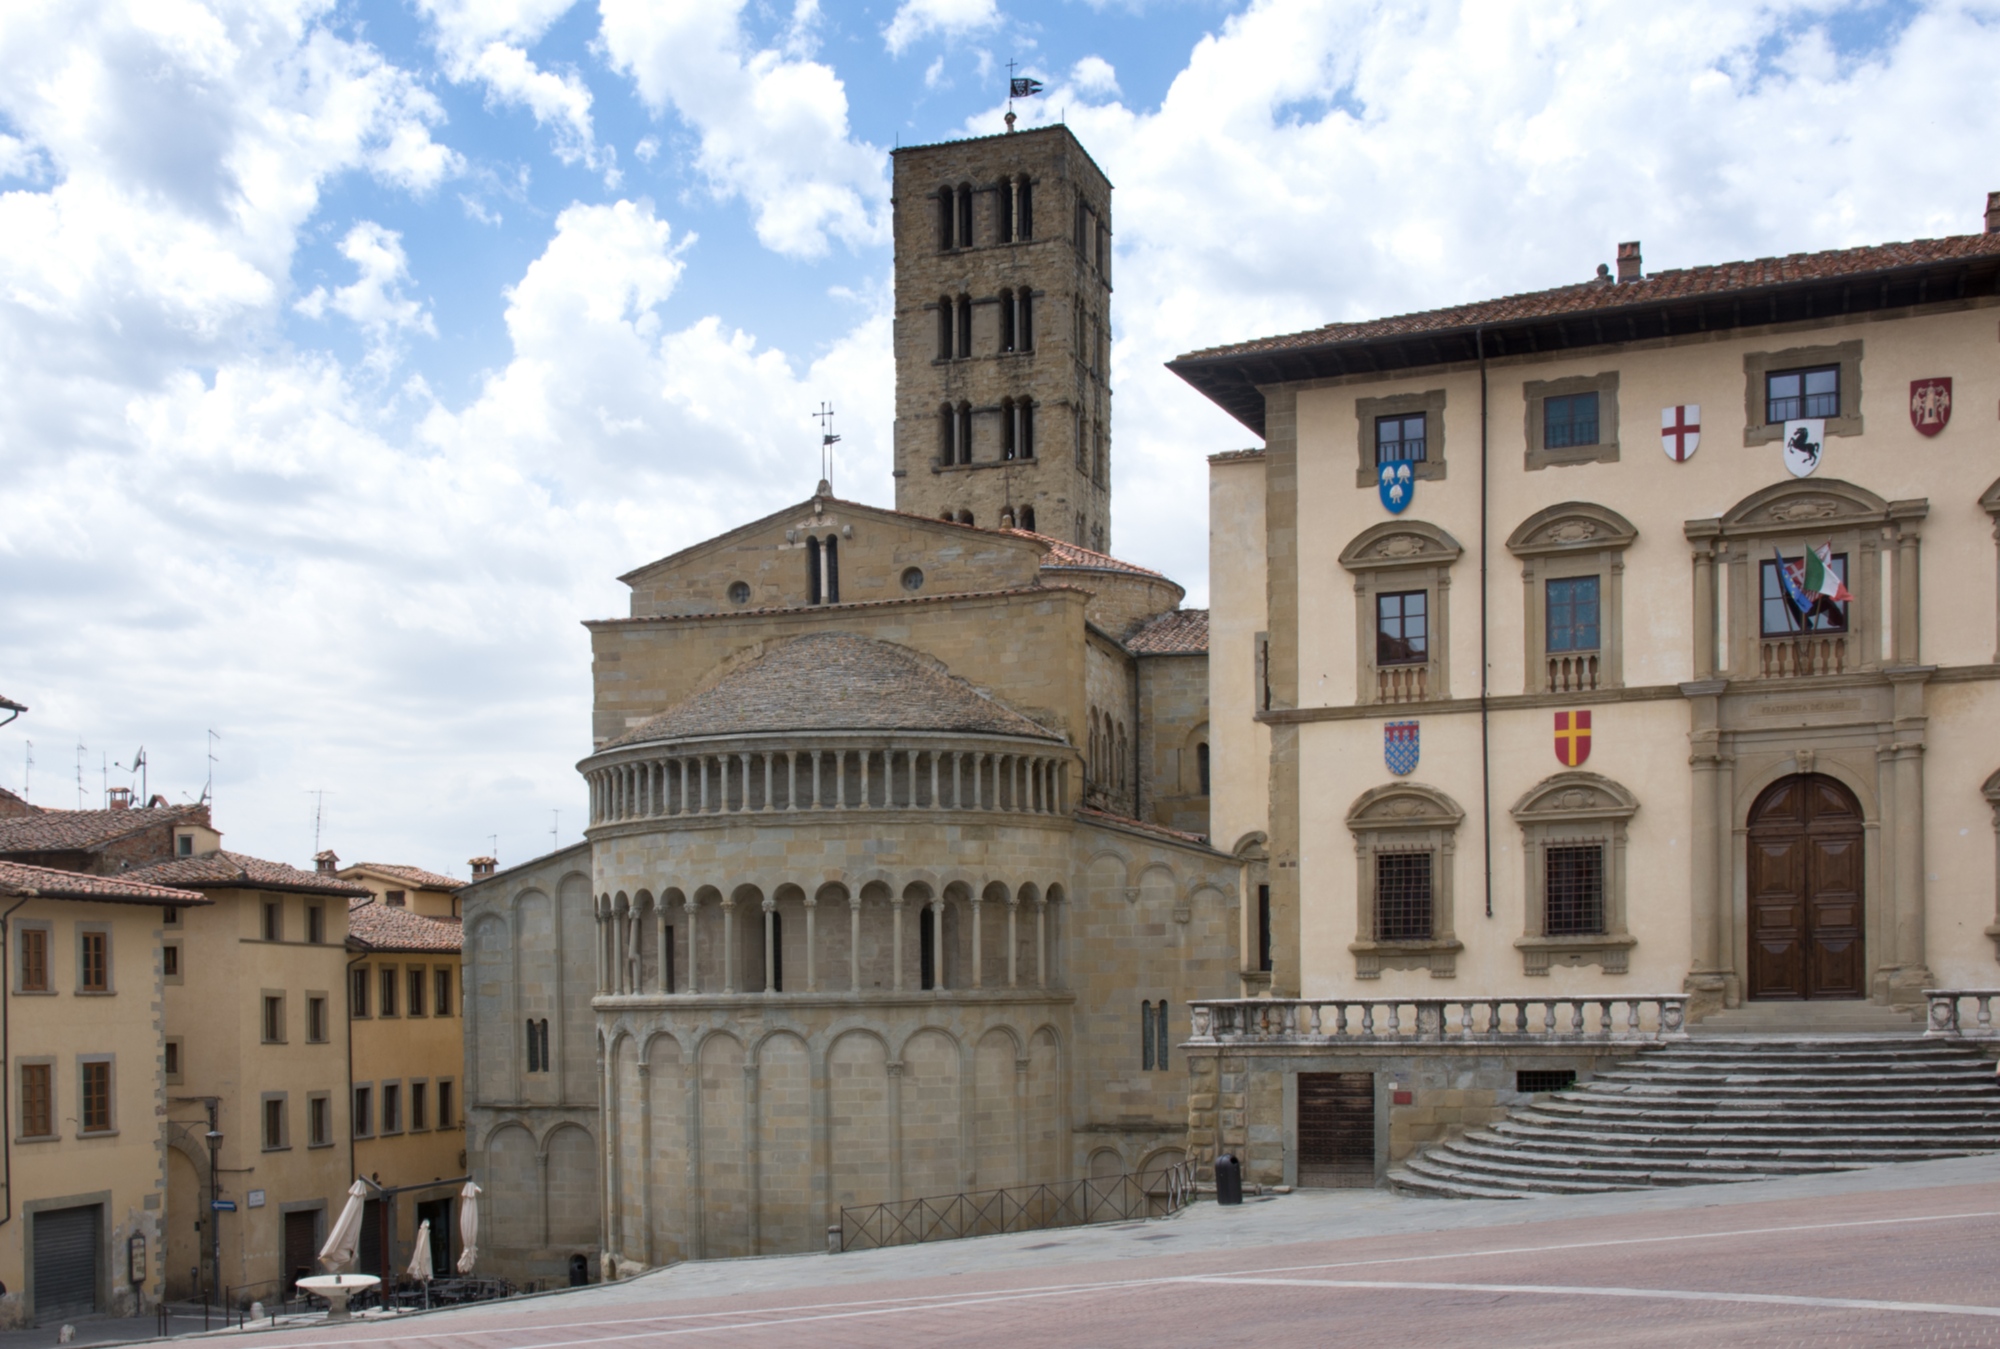 La place principale d'Arezzo